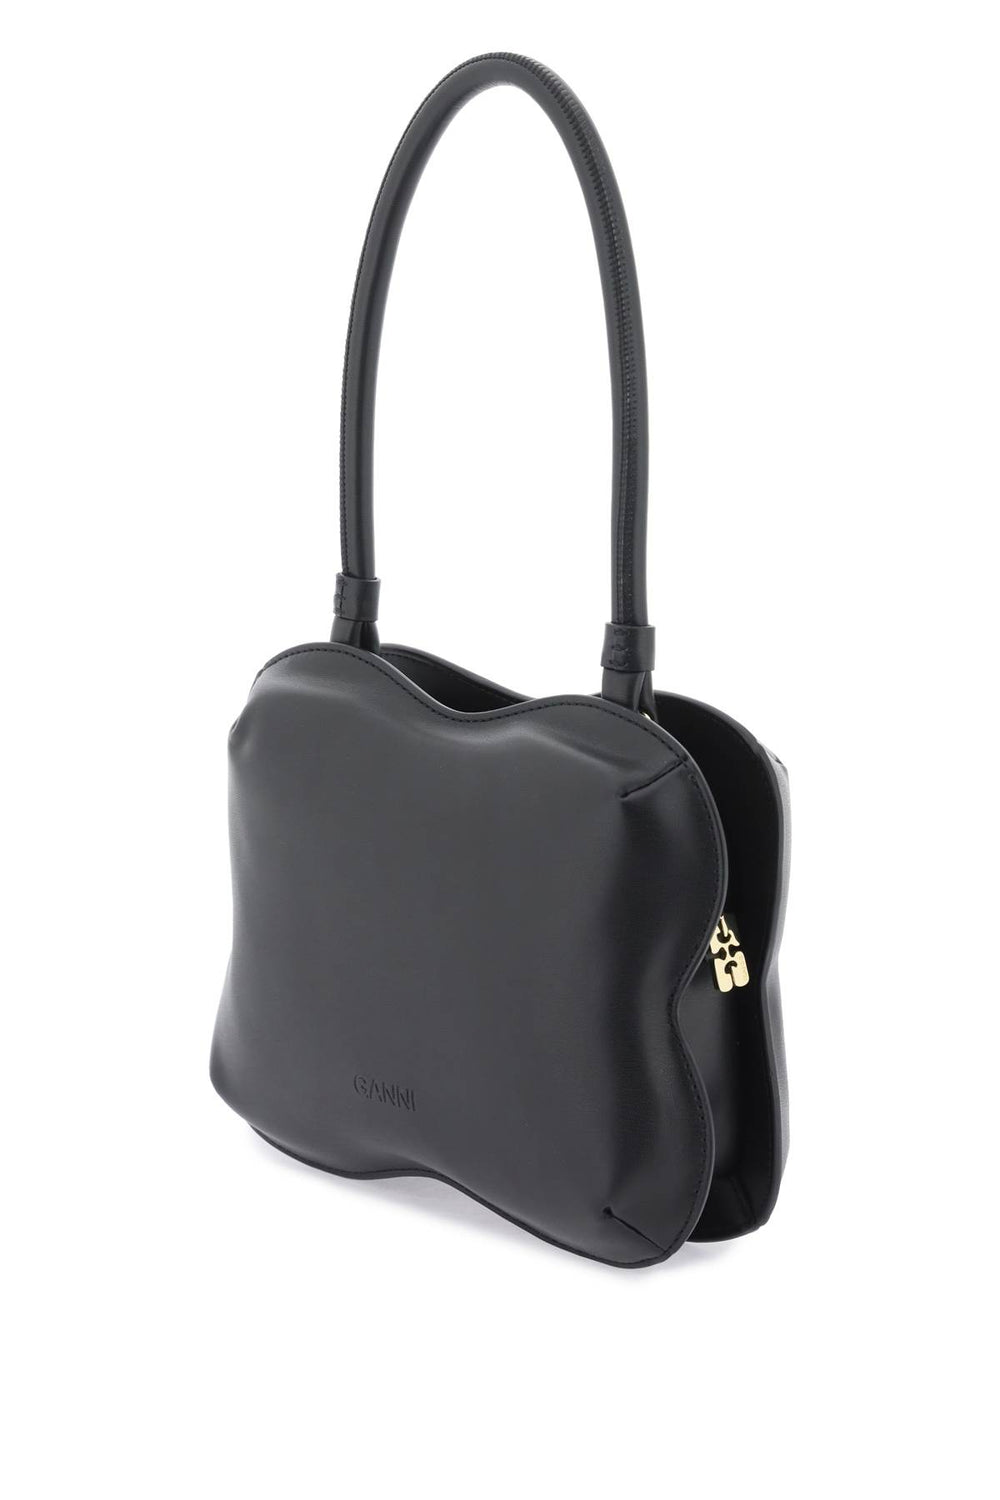 butterfly handbag-1